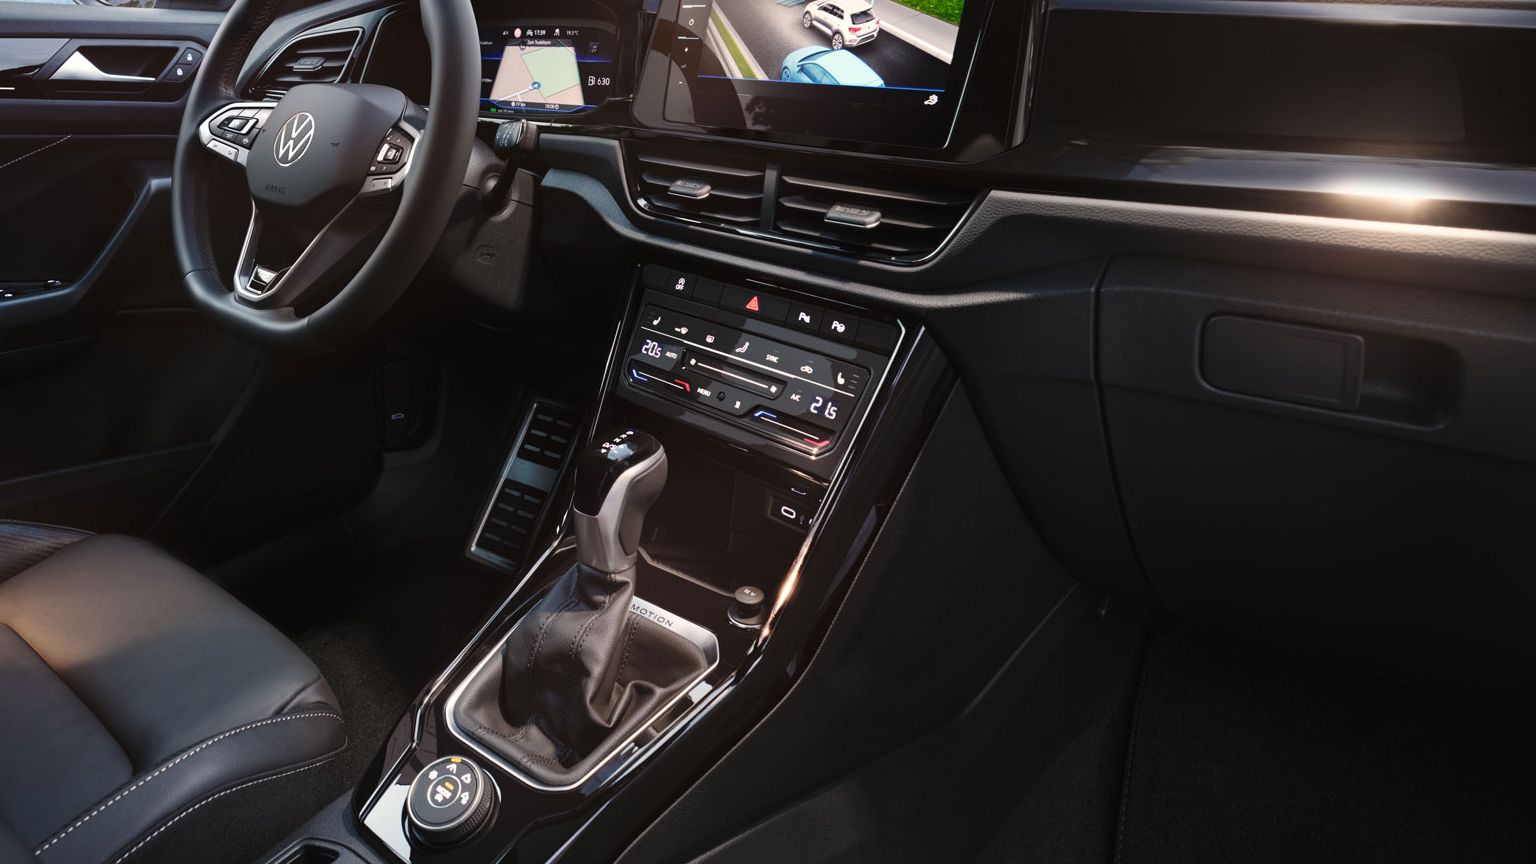 Innenanischt de VW T-Roc mit Digital Cockpit, Soft Instrument Panel/Stiching und Multifunktionslenkrad